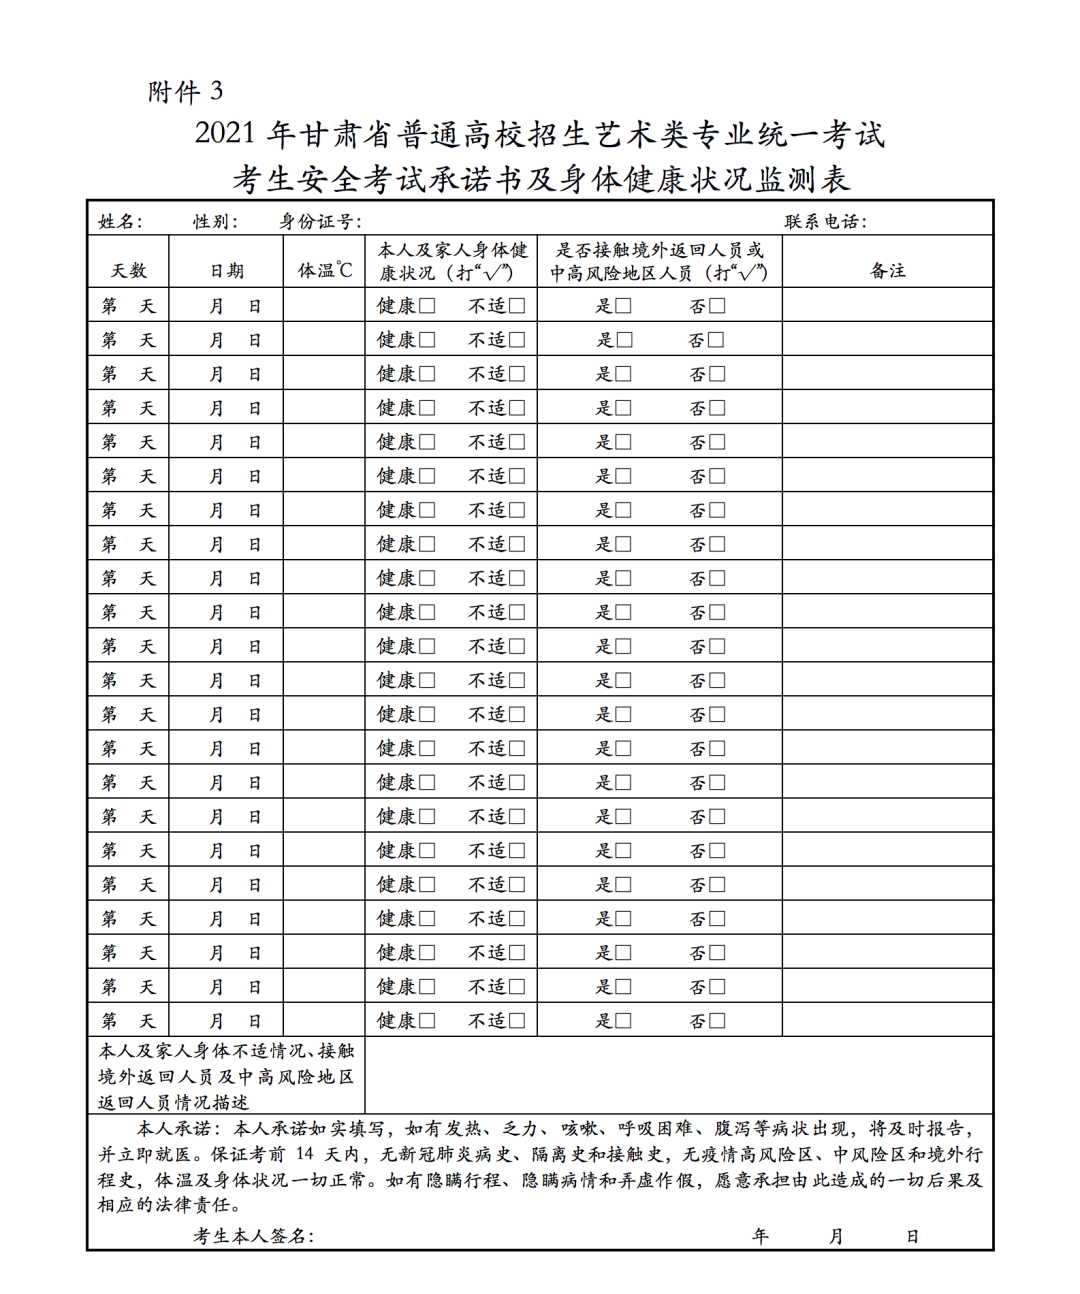 关于做好2021年甘肃省普通高等学校招生艺术类专业统一考试工作的通知